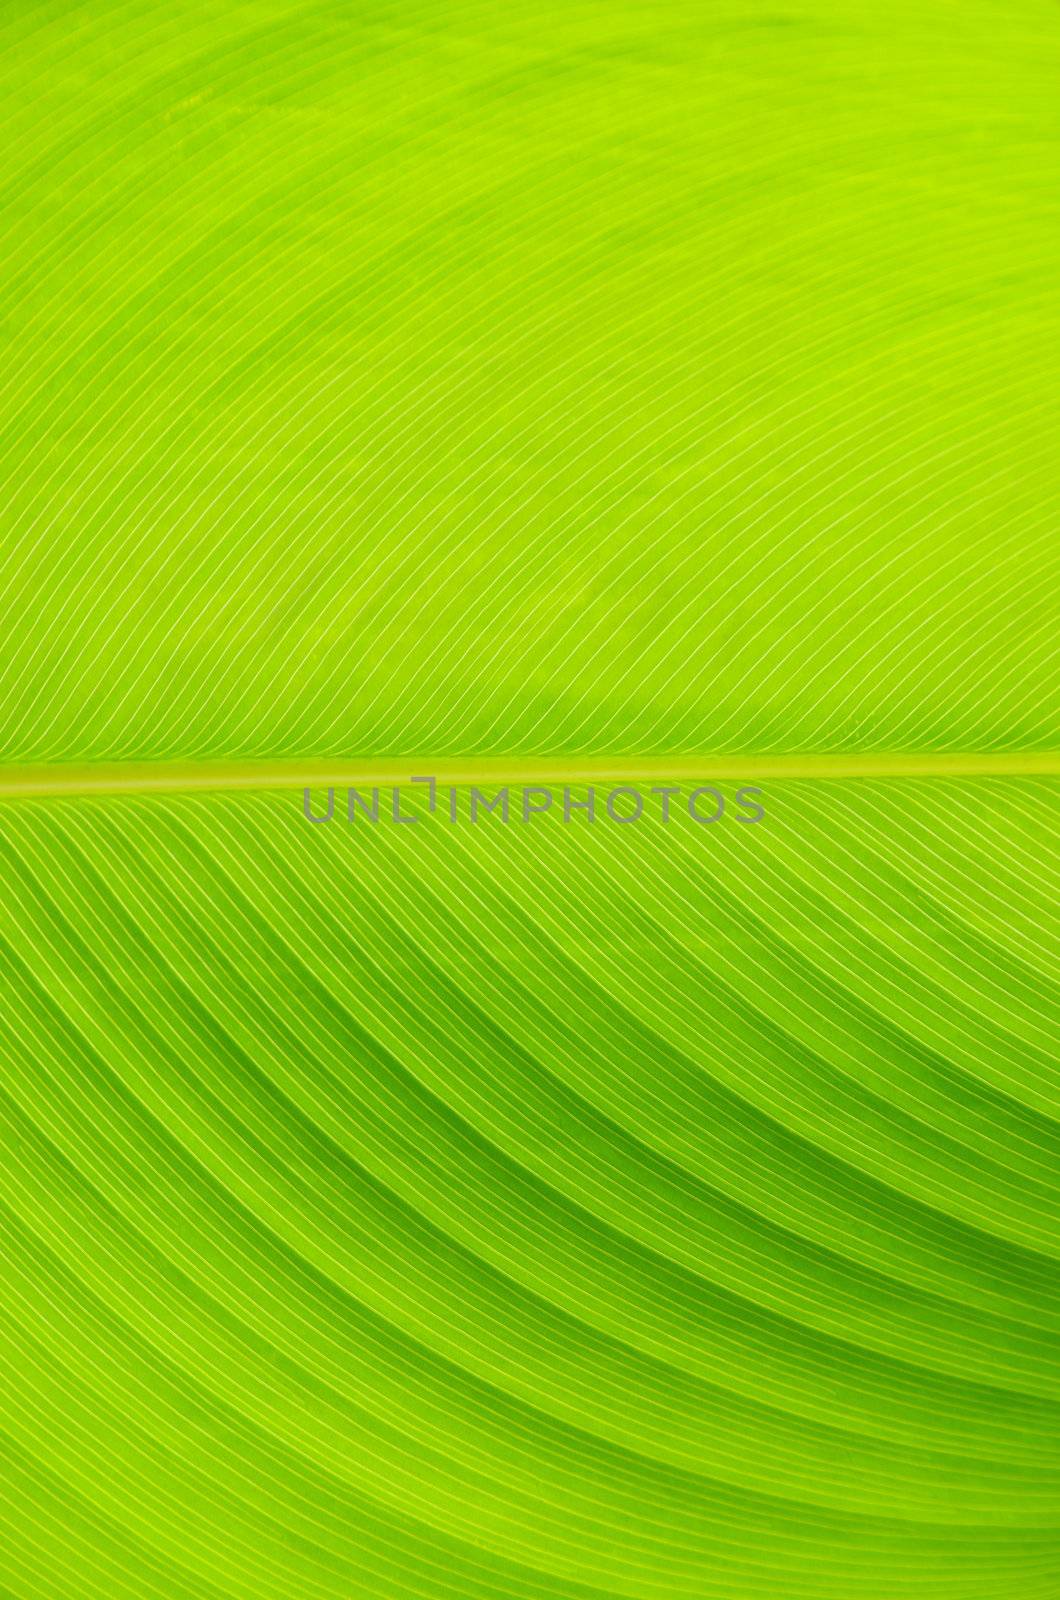 leaf texture  by Pakhnyushchyy